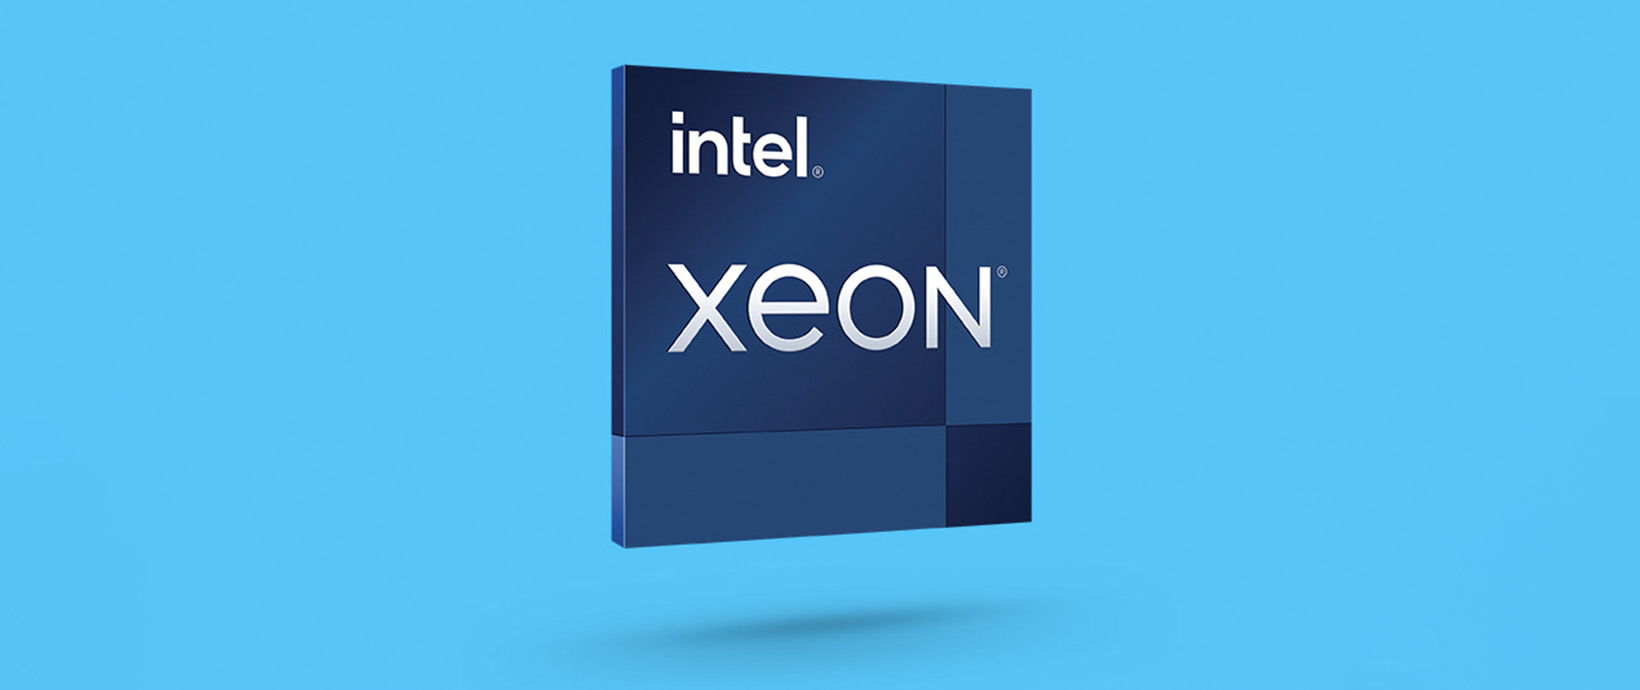 Altair_Newsroom_PartnerPerspectives_Intel-Xeon_Hero